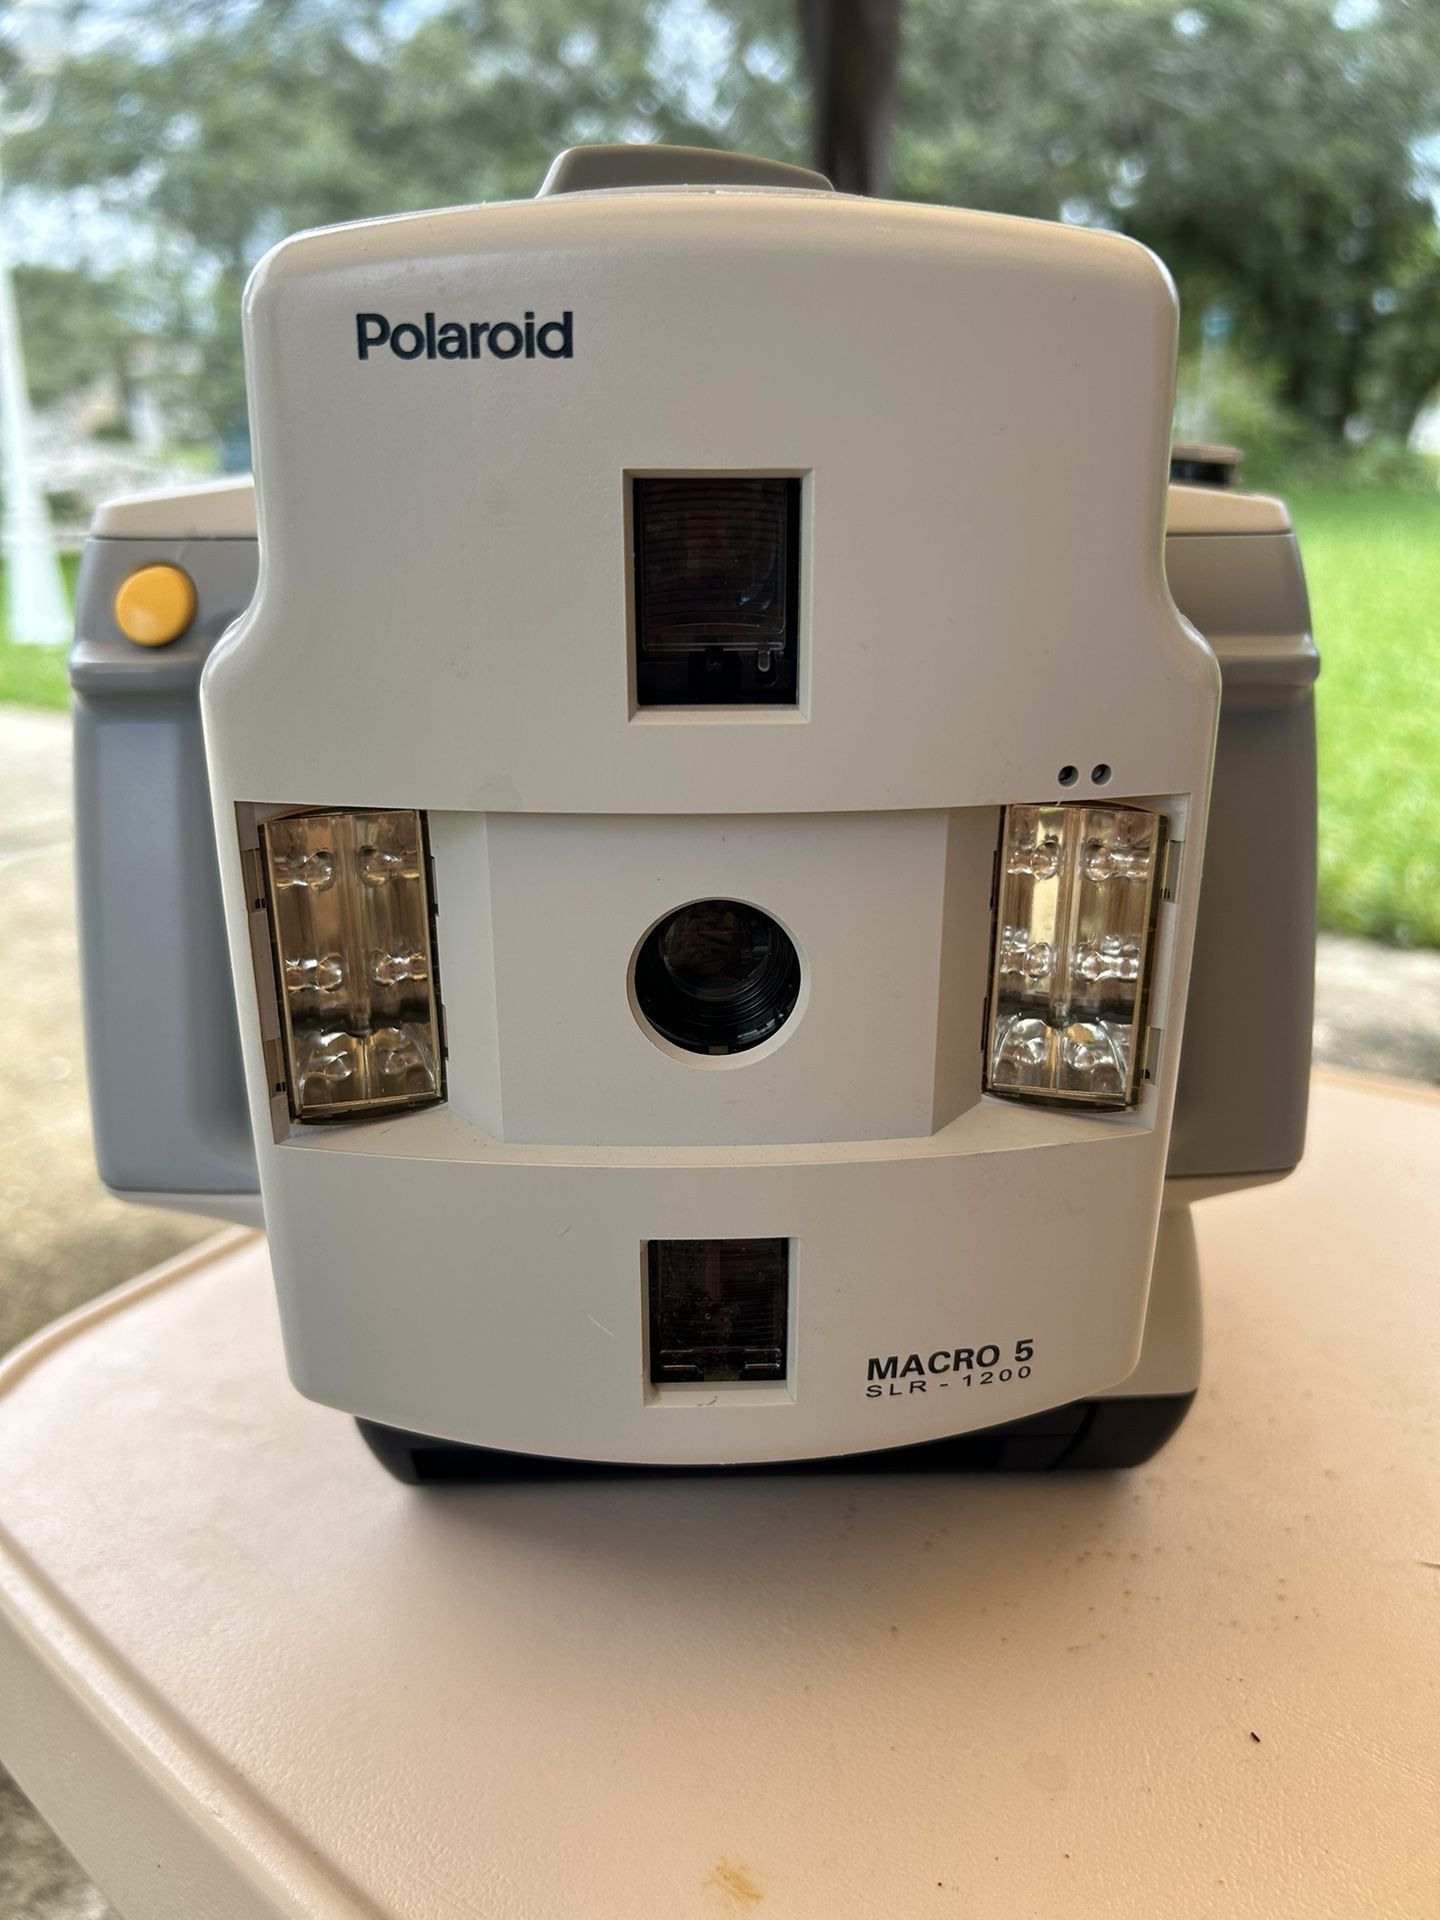 Dental Camera Polaroid Macro 5 SLR - 1200 Dental Equipment 